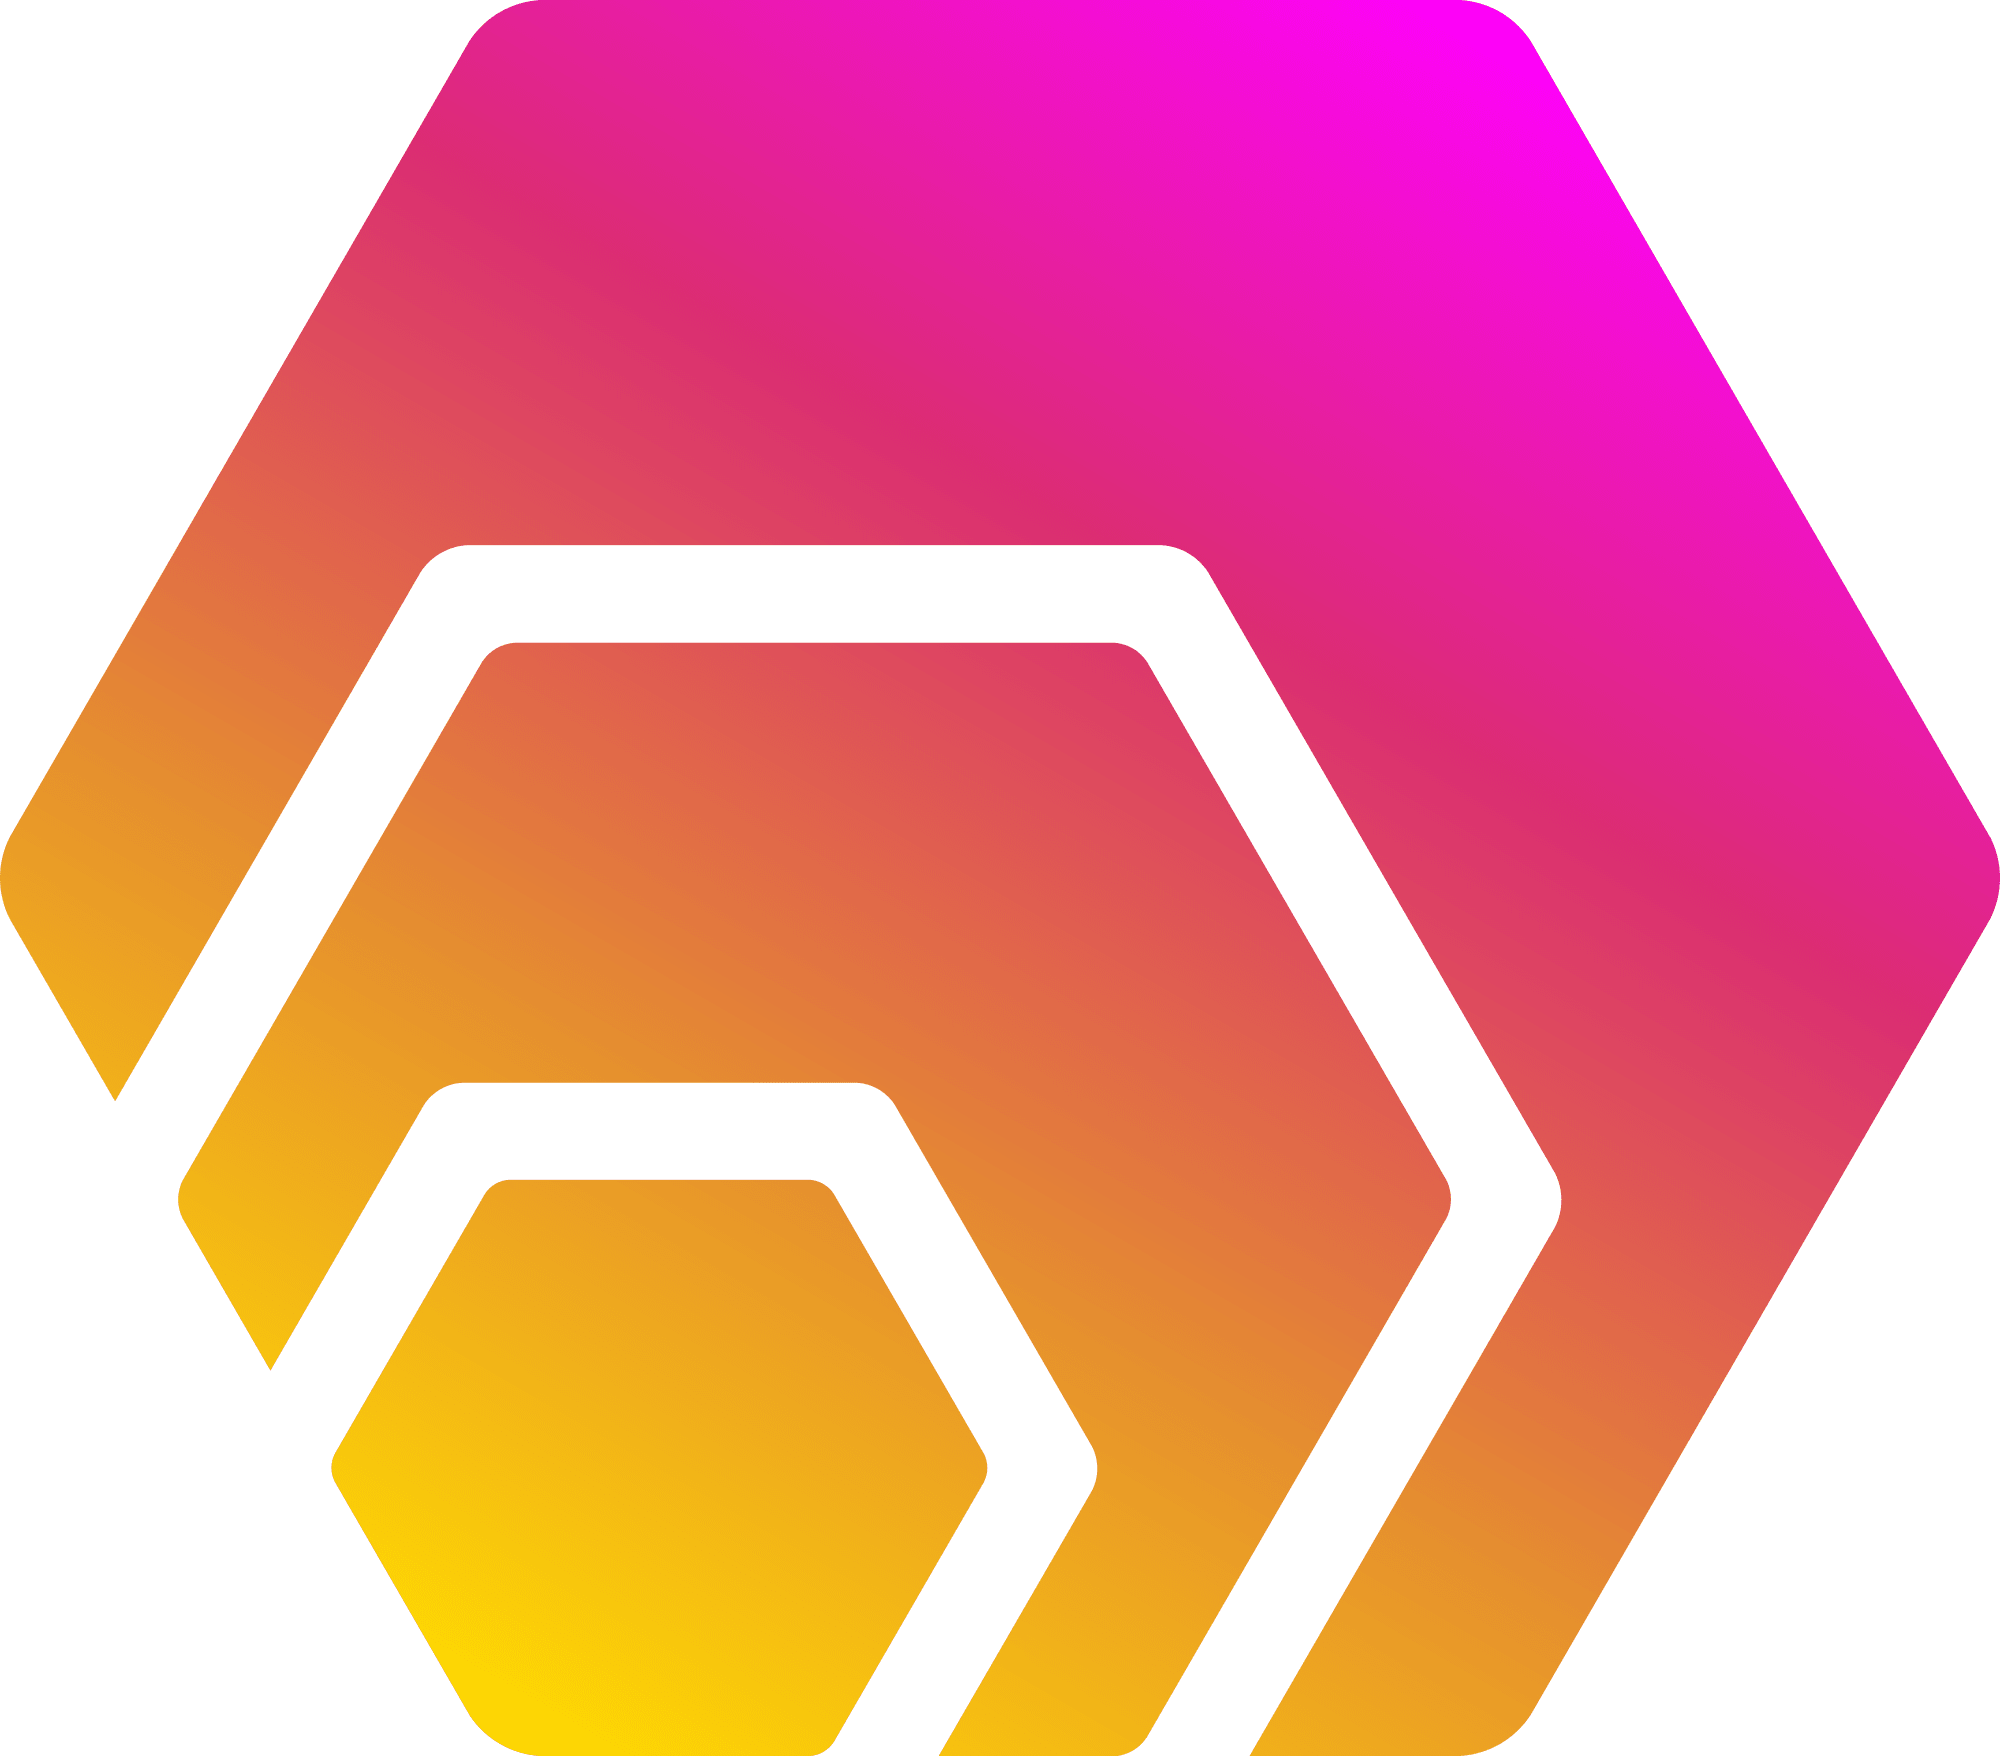 HEX (HEX) logo